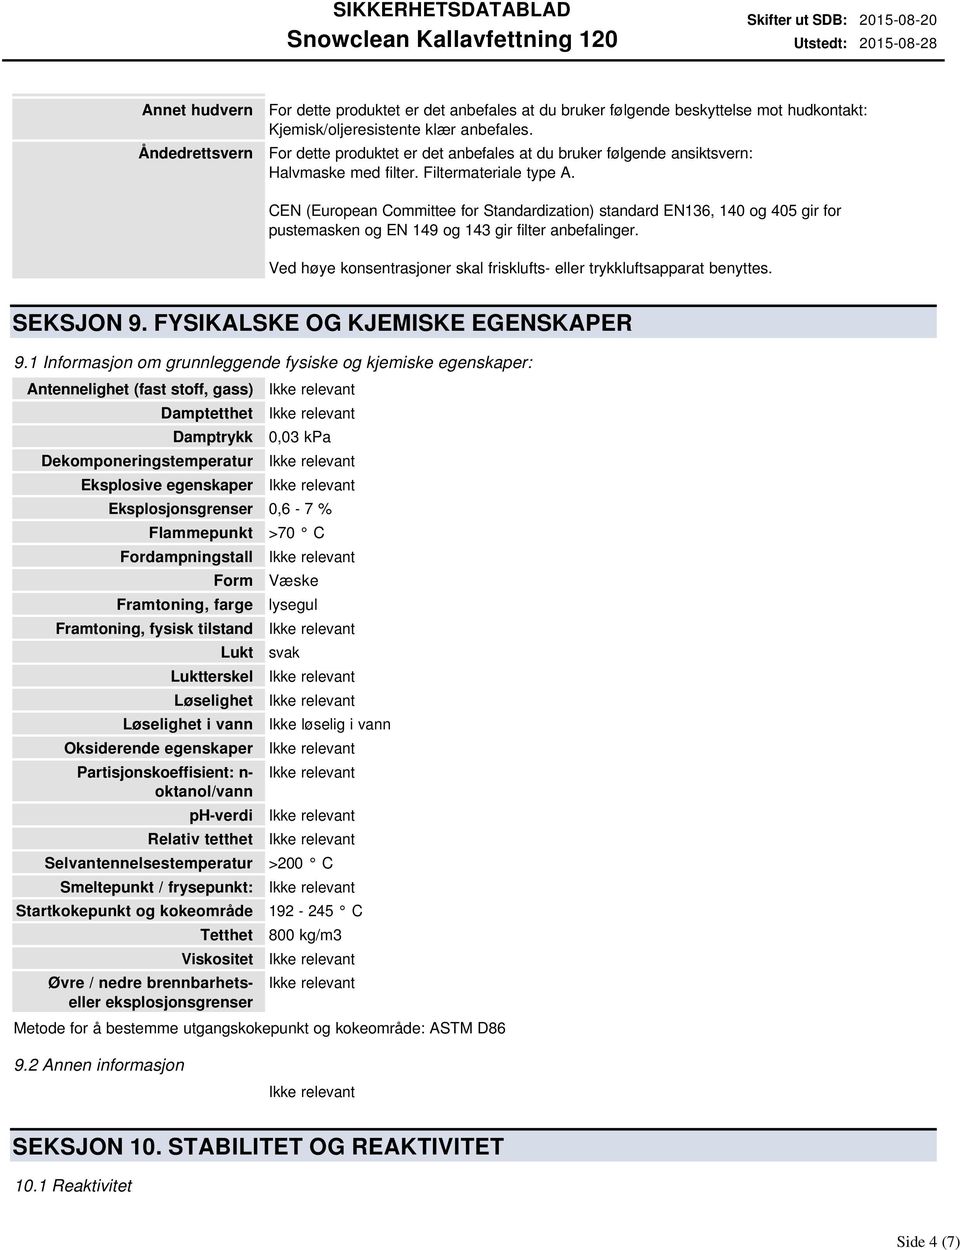 CEN (European Committee for Standardization) standard EN136, 140 og 405 gir for pustemasken og EN 149 og 143 gir filter anbefalinger.